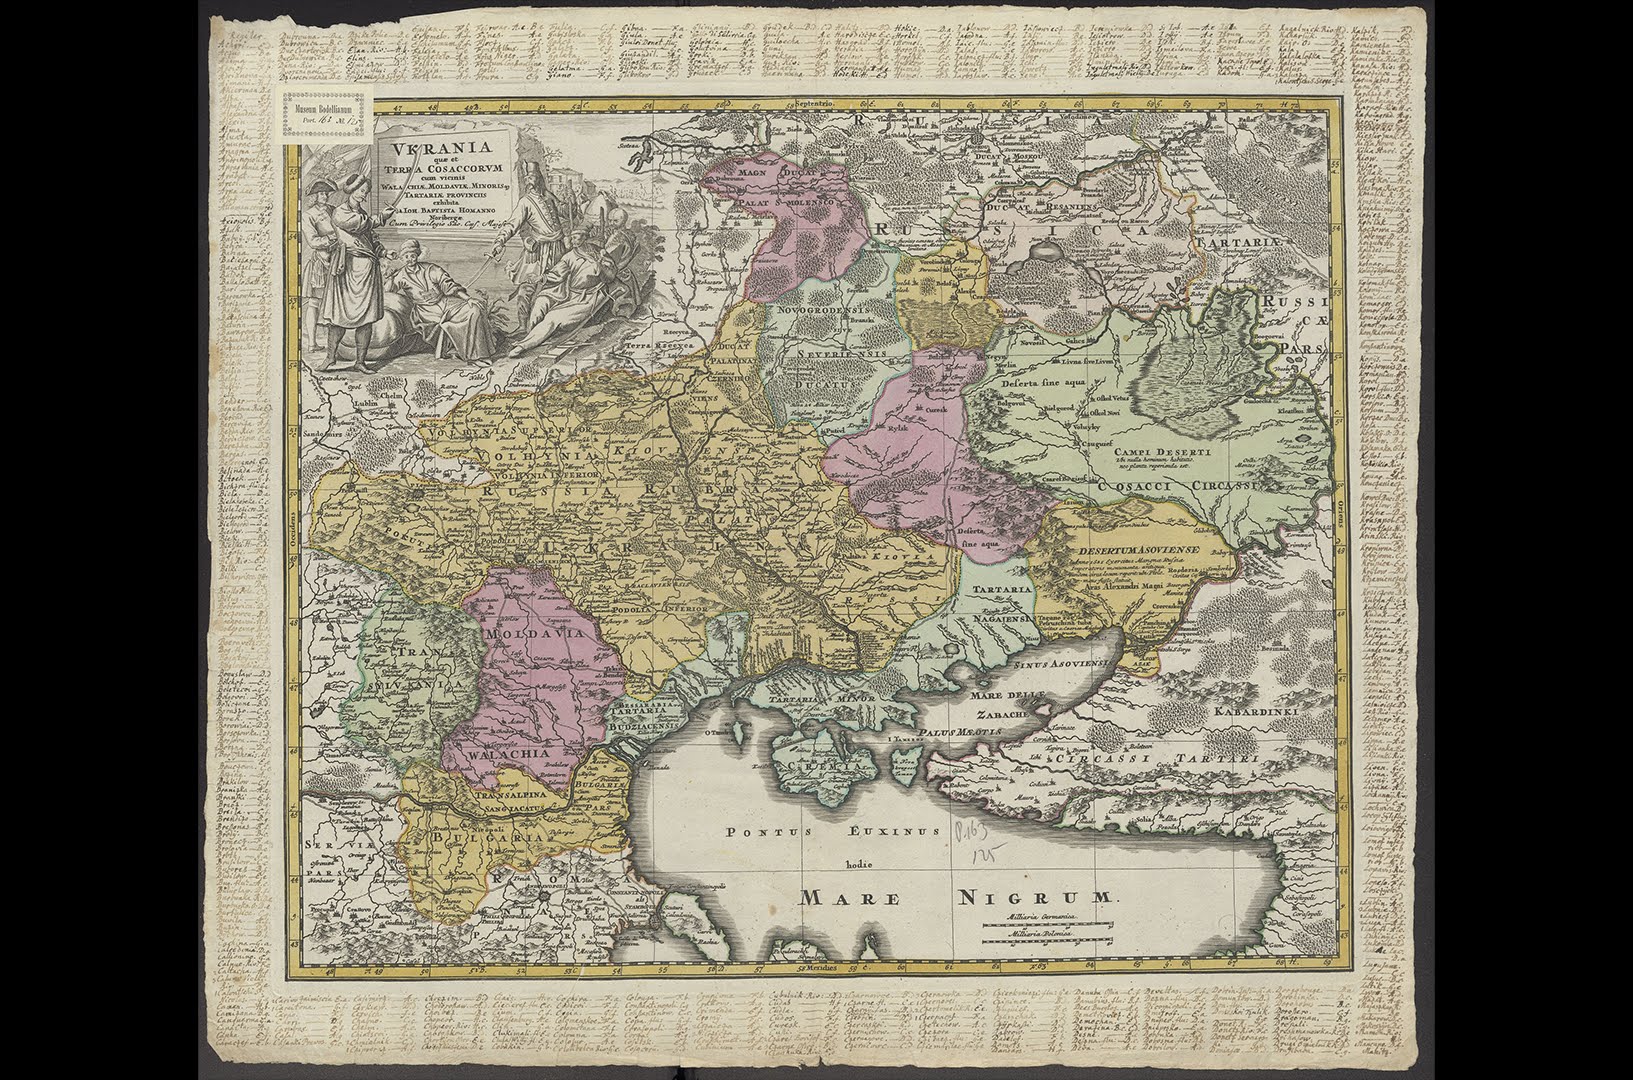 Oekraïne als land van Kozakken, door Joahnn Baptist Homann, ca. 1702-1720, collectie Universitaire Bibliotheken Leiden (06 UBLCKA_COLLBN_Port_163_N_125).